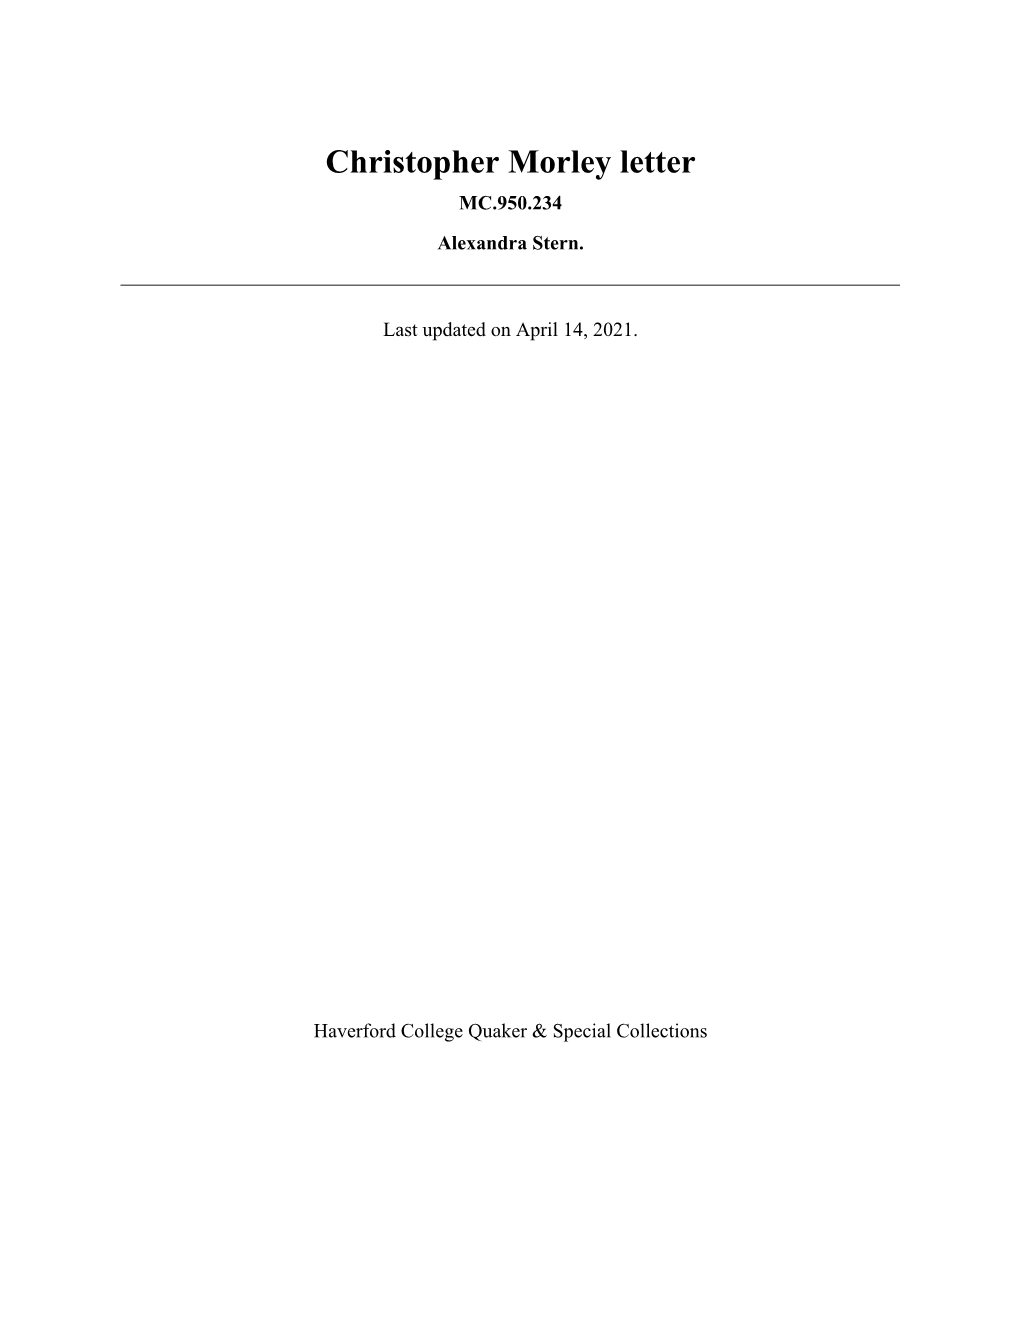 Christopher Morley Letter MC.950.234 Alexandra Stern